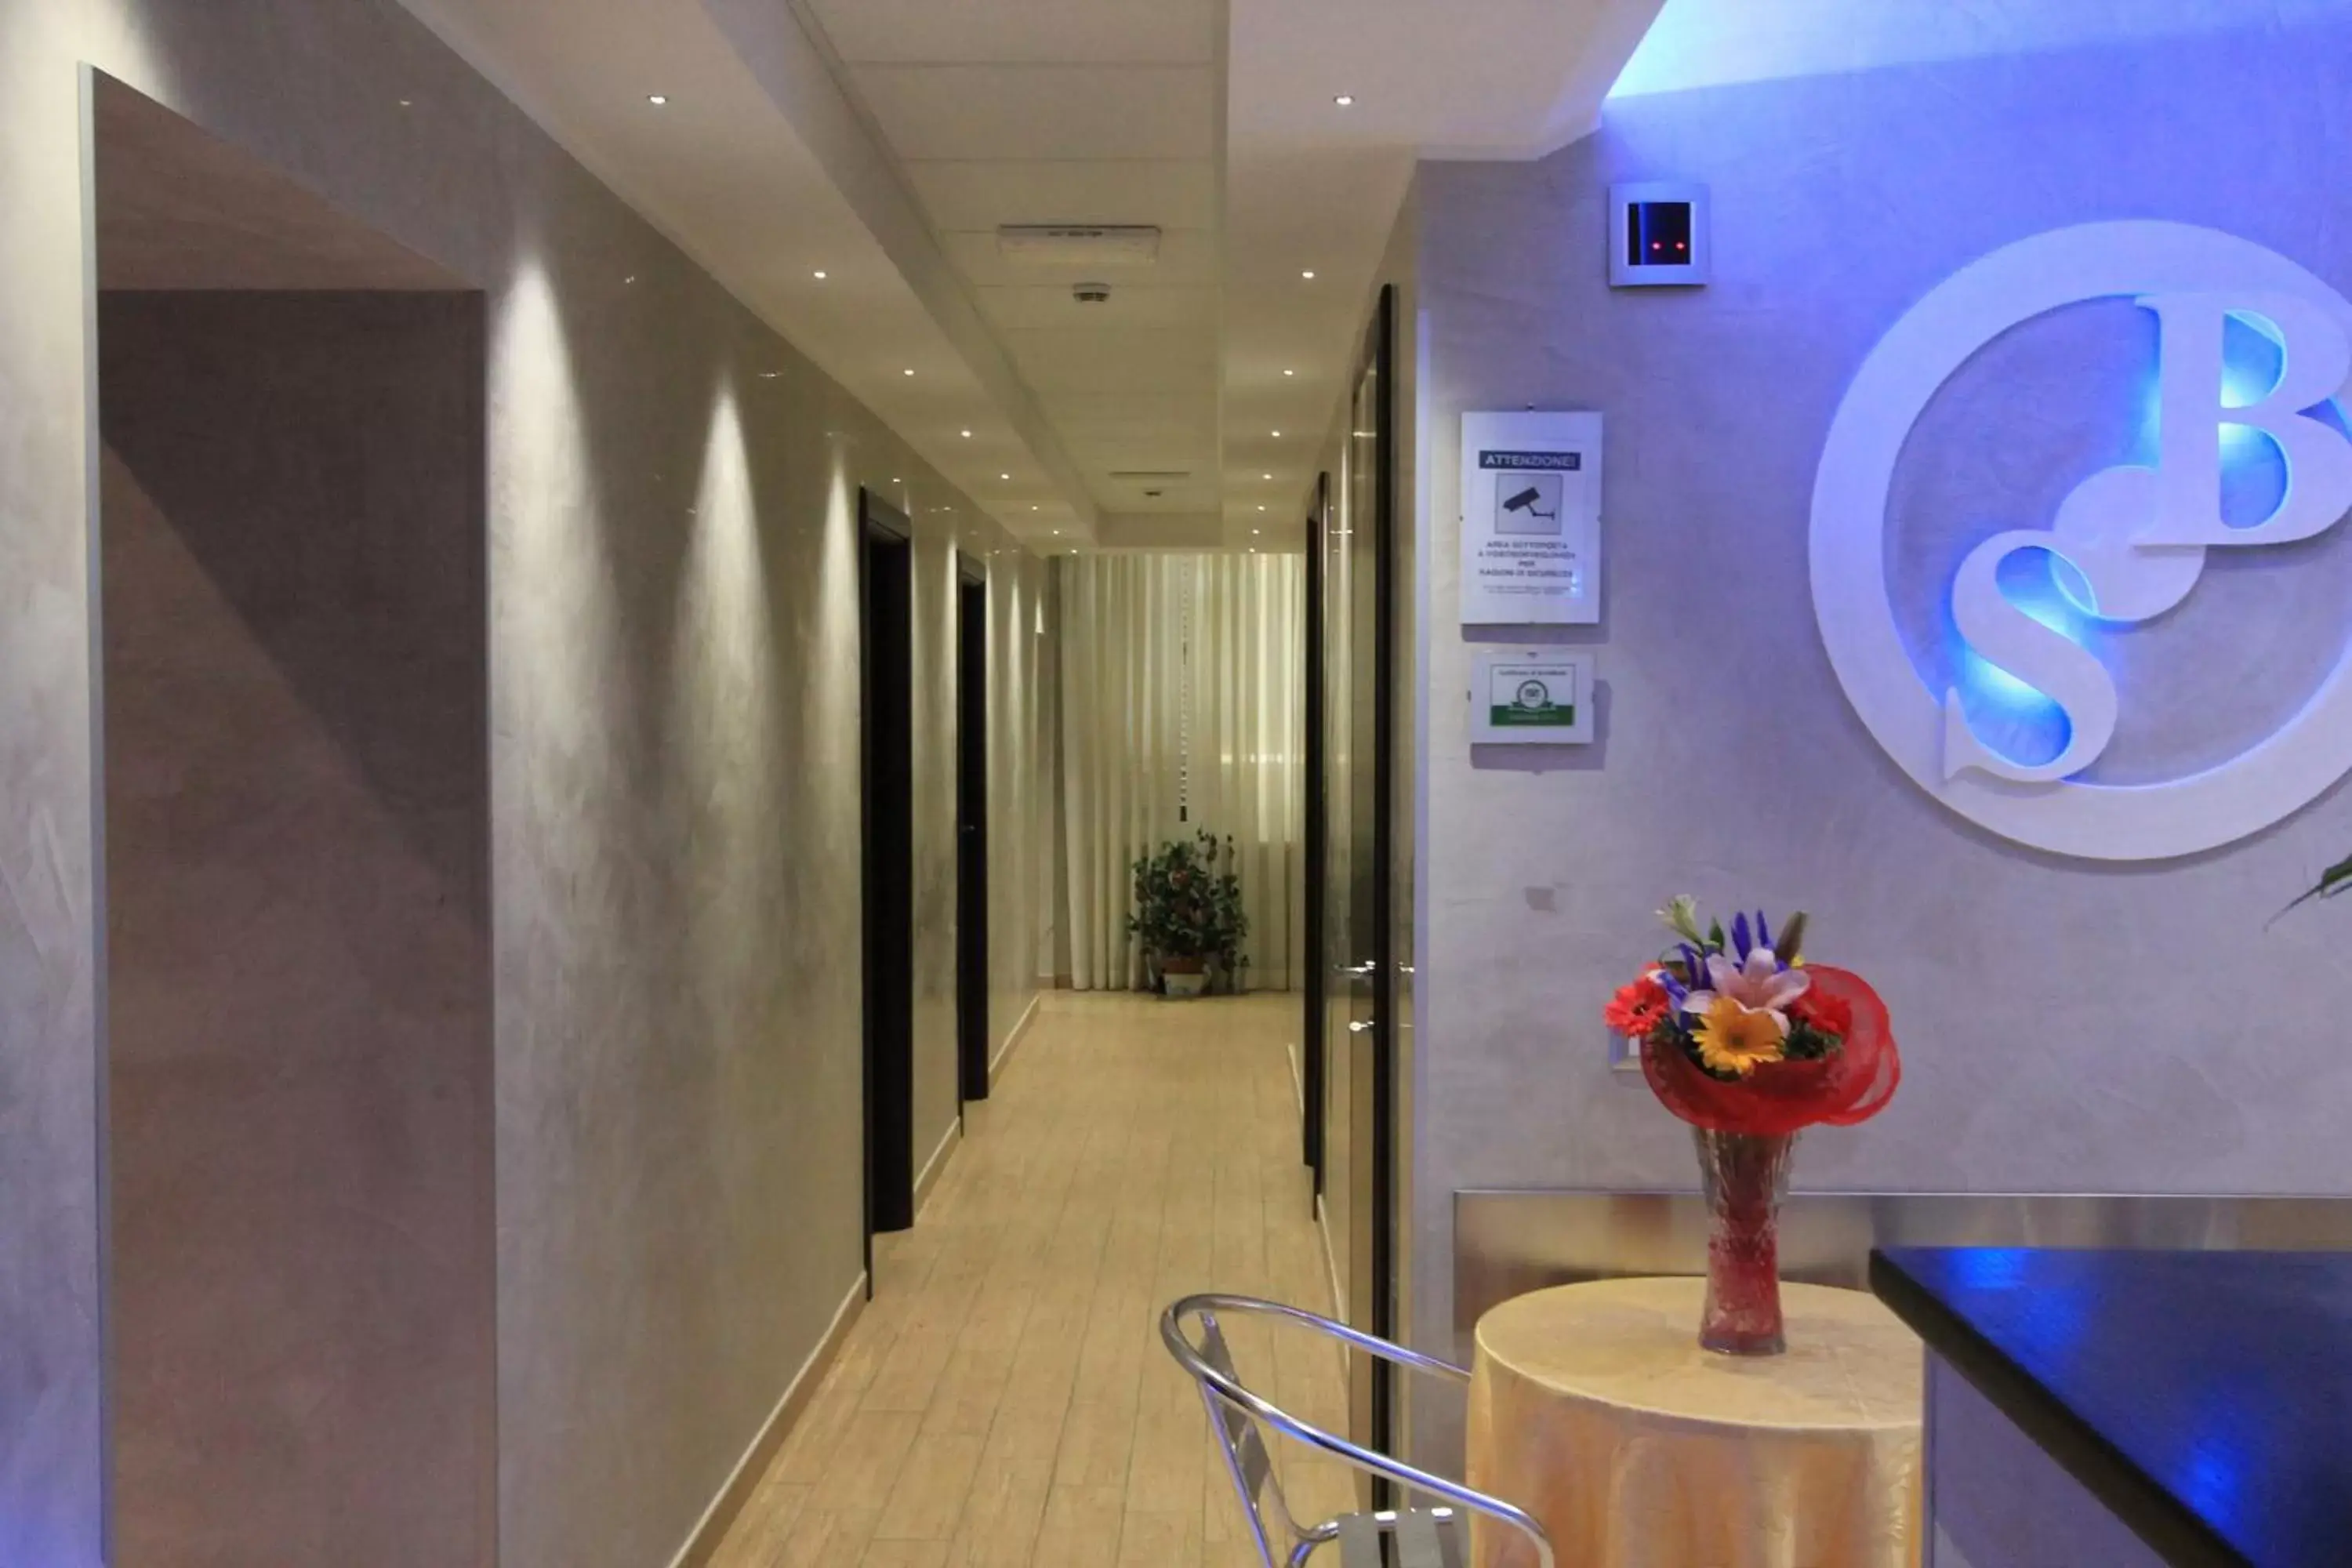 Lobby or reception, Bathroom in Buonarroti Suite